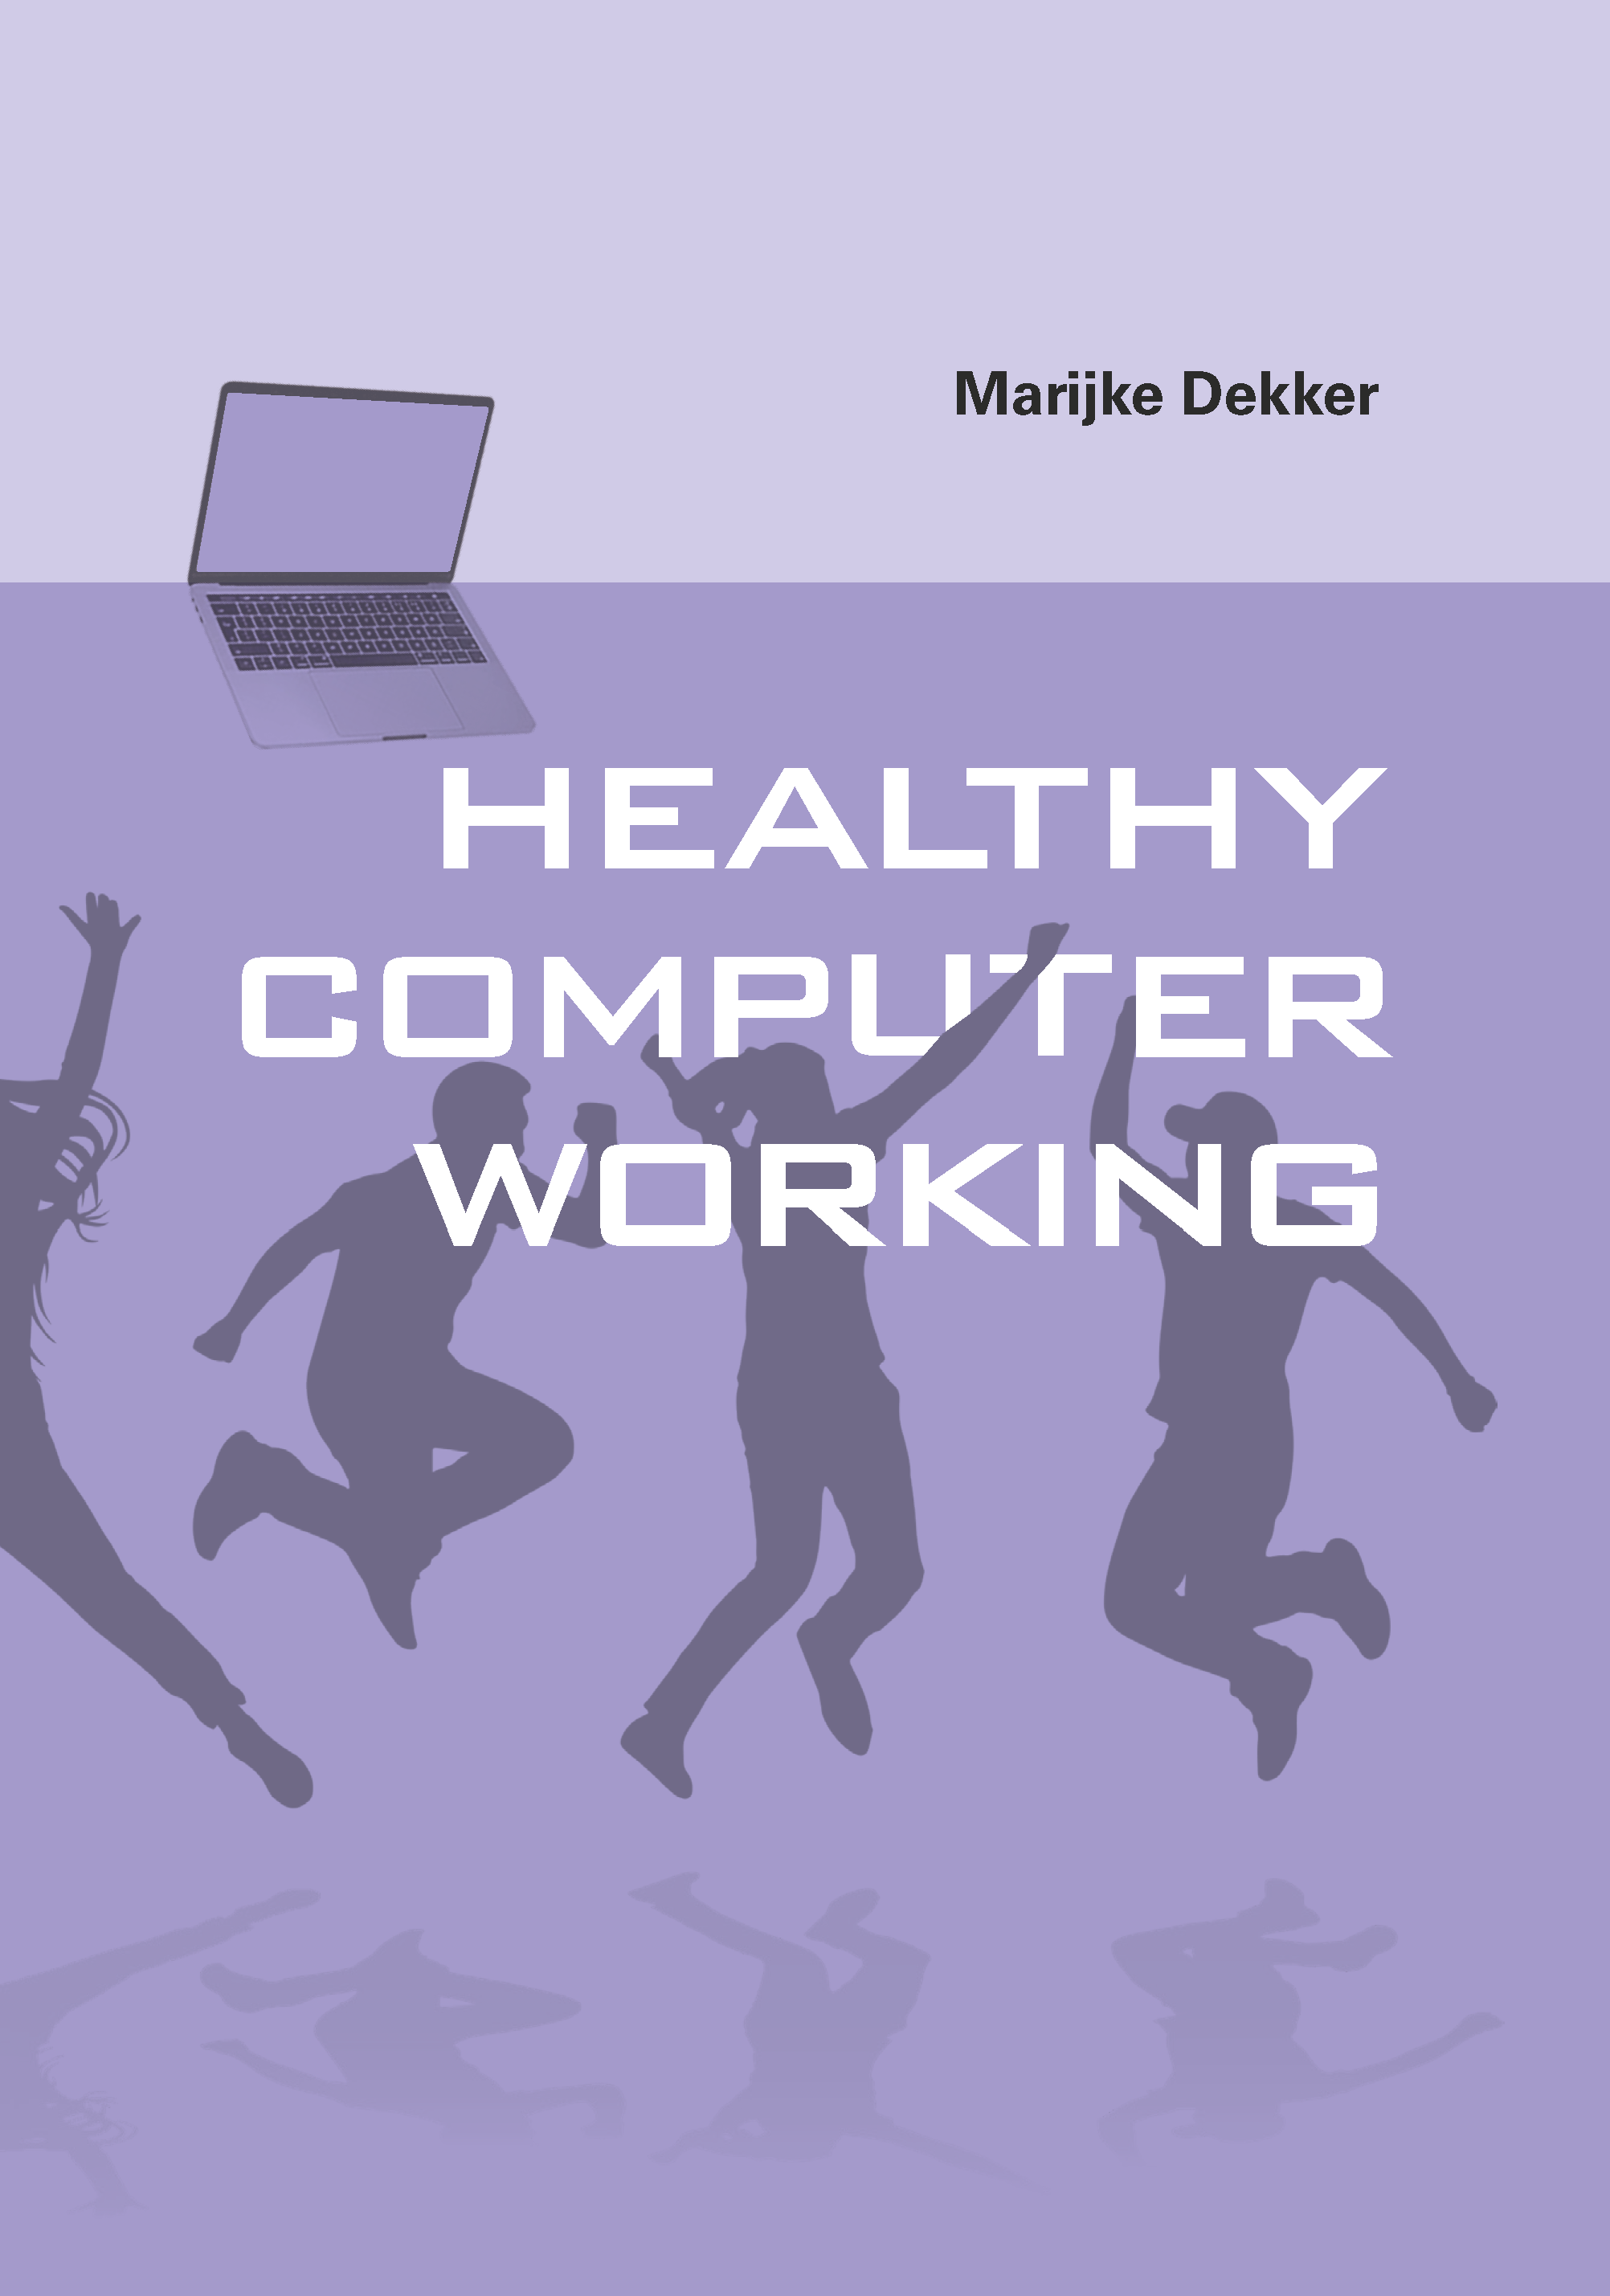 Thesis titled 'Healthy computer working' by Marijke Dekker